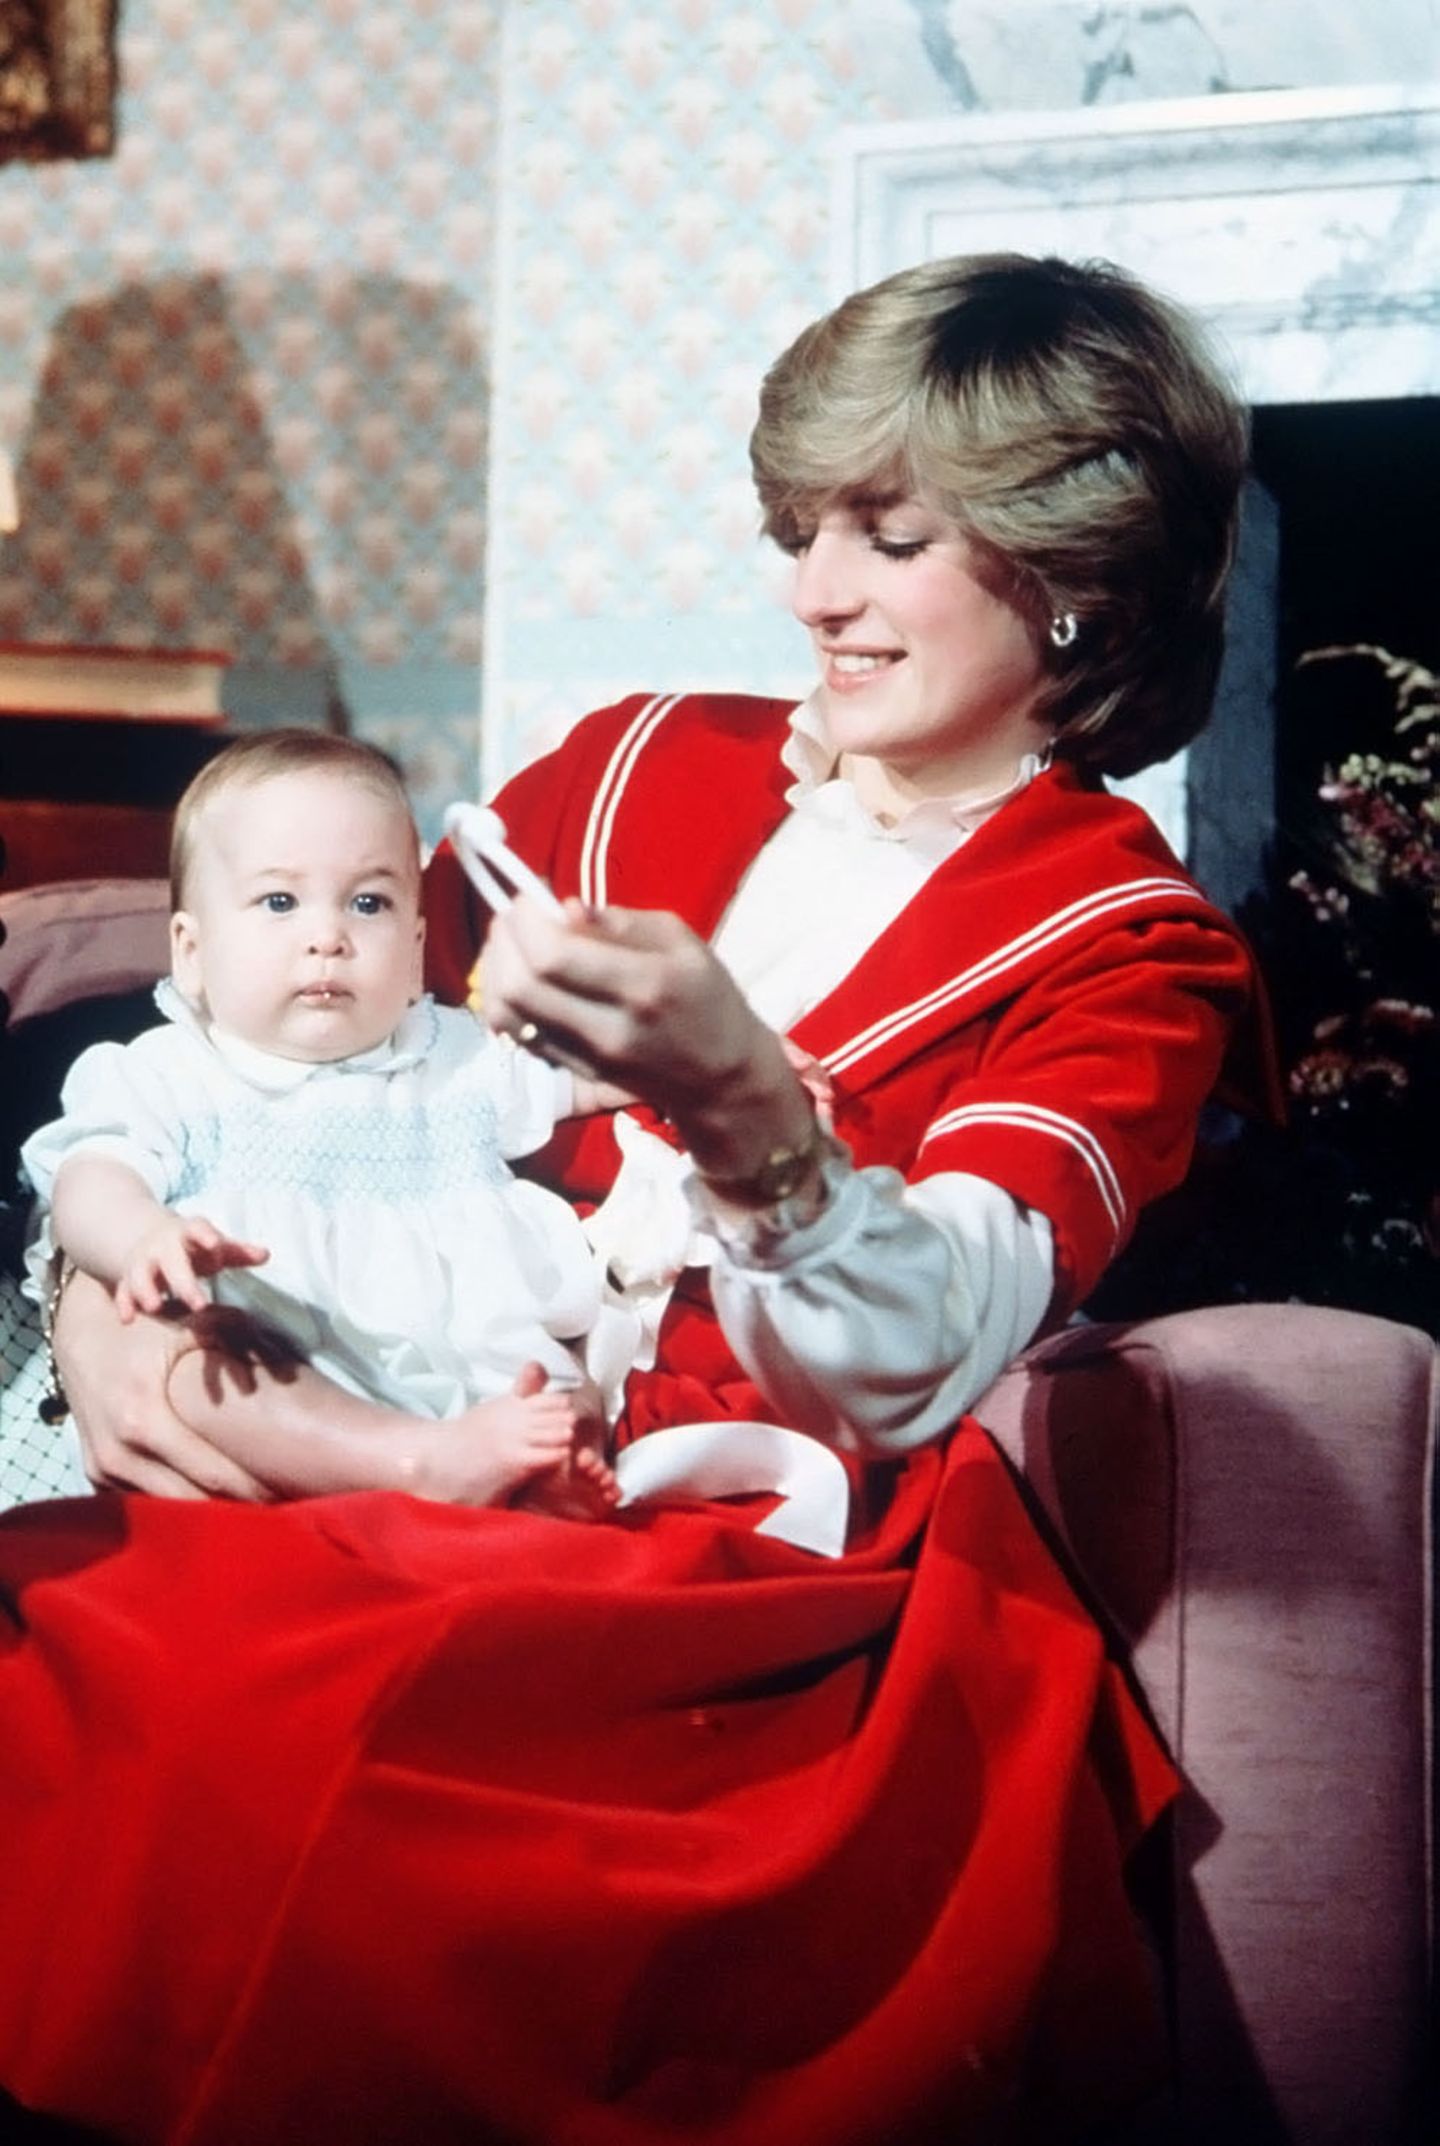 Weihnachten 1982 feiert Prinzessin Diana mit Söhnchen William im Kensington Palace. Richtig festlich scheint der kleine Prinz aber nicht gestimmt zu sein.